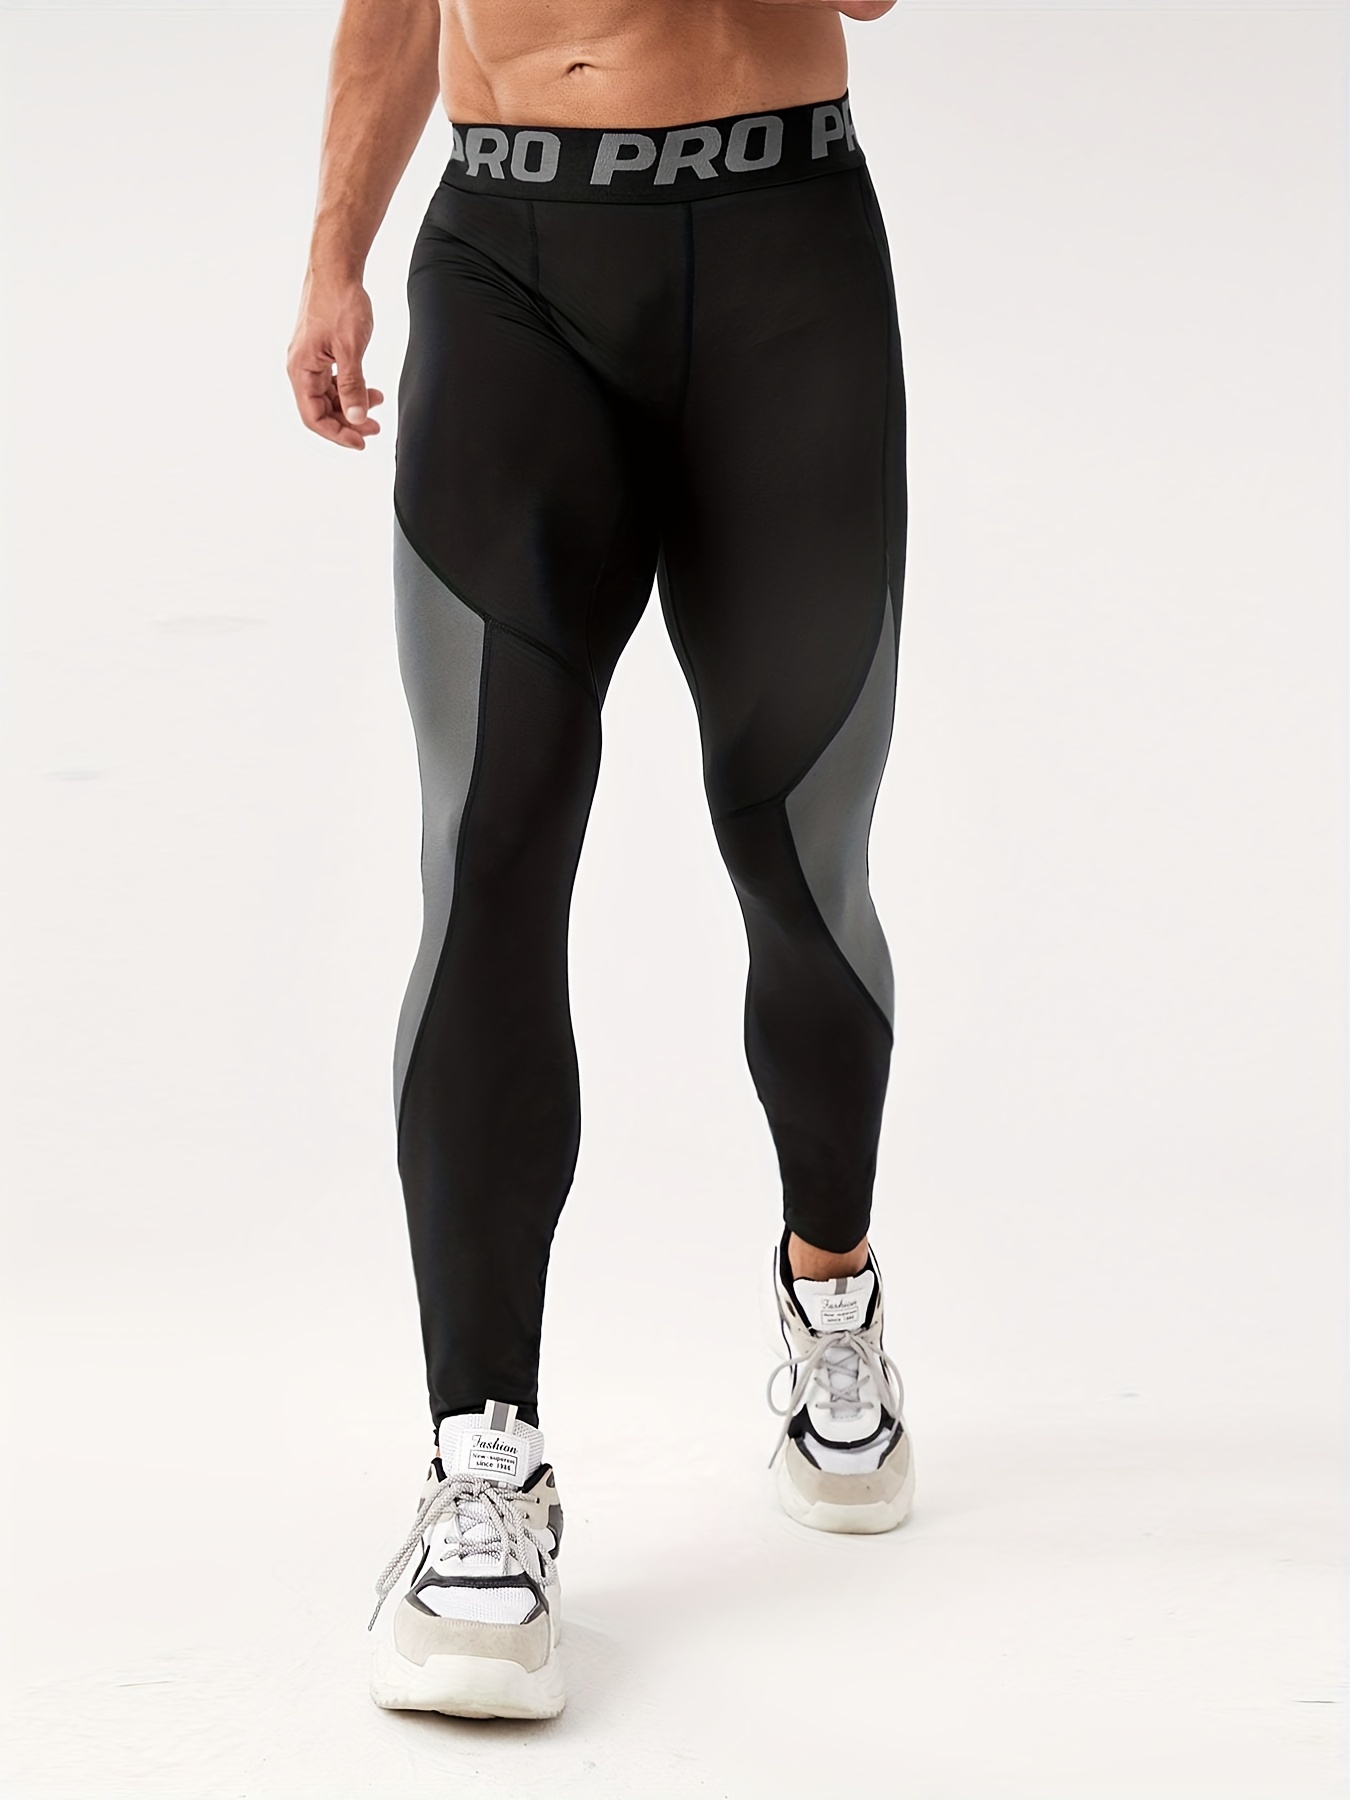 Pantalones de compresión para correr para Hombre, mallas deportivas para  Fitness, pantalones largos de entrenamiento para